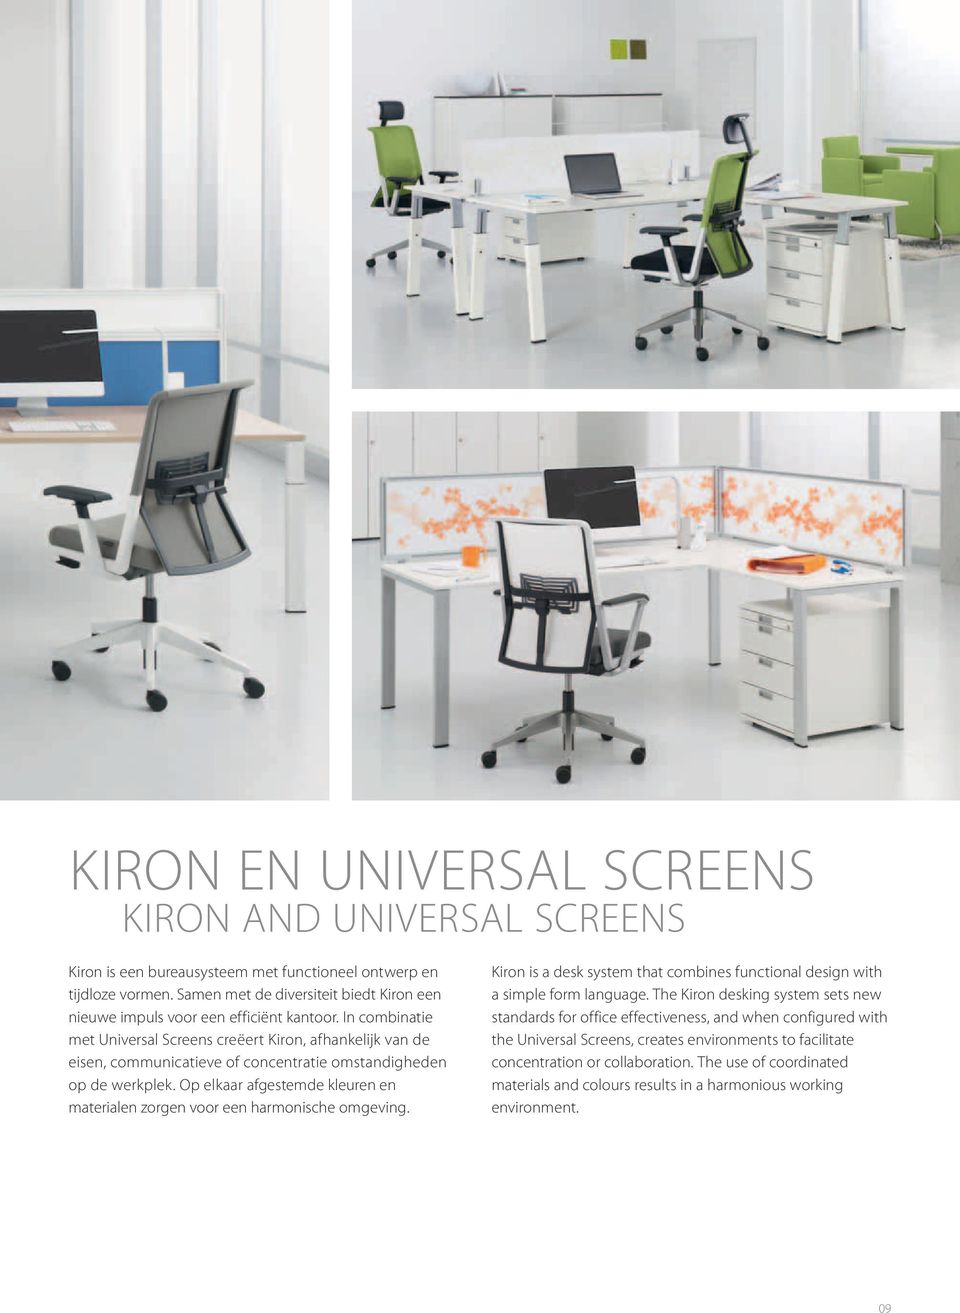 In combinatie met Universal Screens creëert Kiron, afhankelijk van de eisen, communicatieve of concentratie omstandigheden op de werkplek.